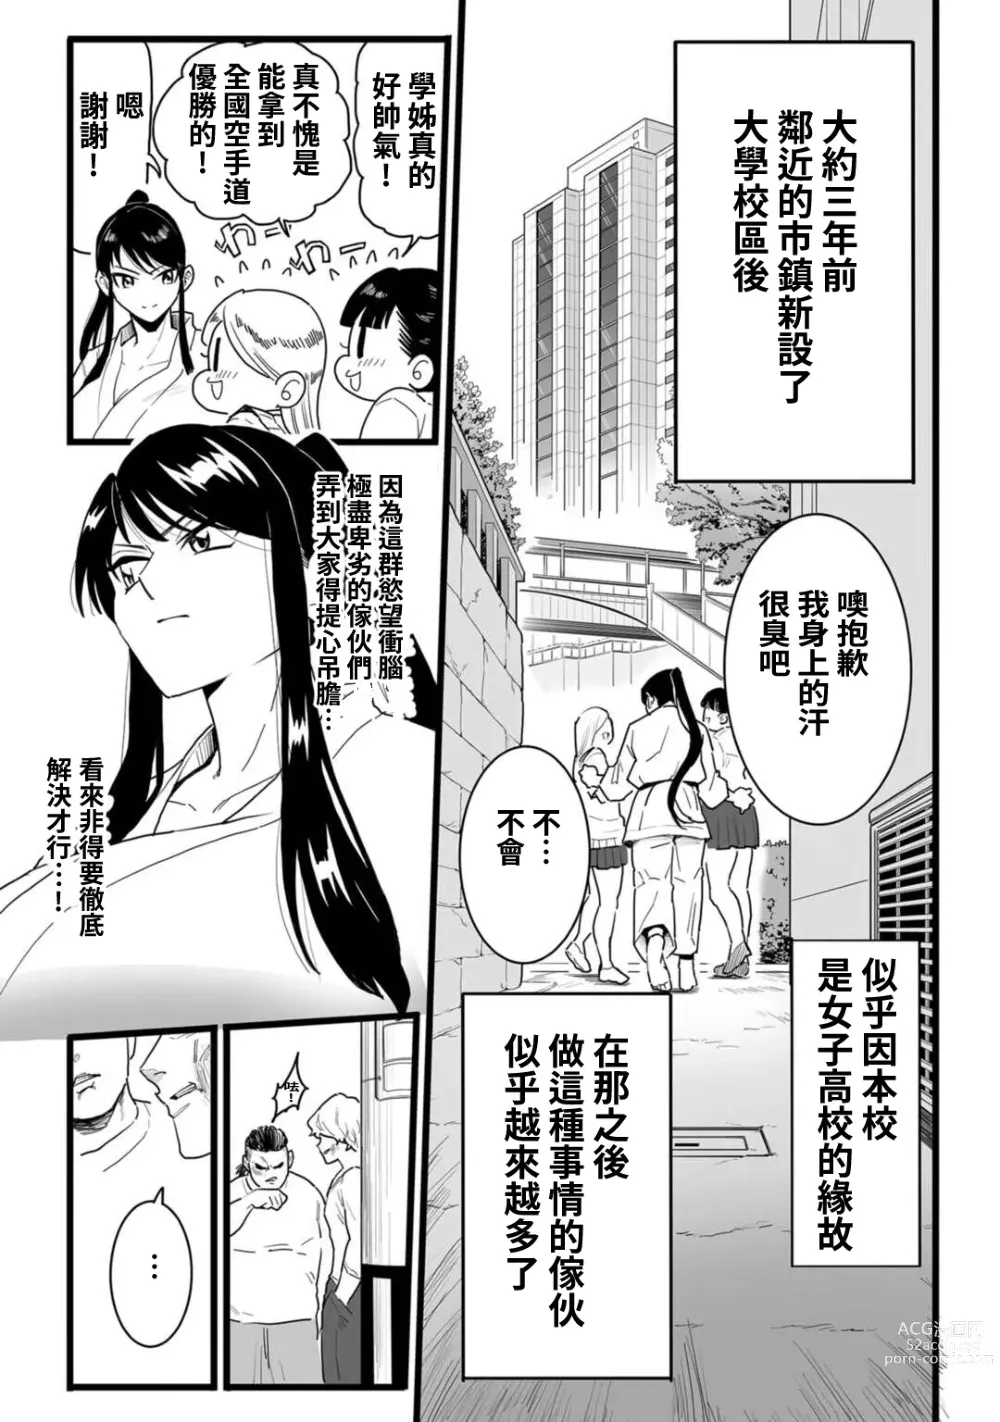 Page 3 of manga Shushou, Otsu!